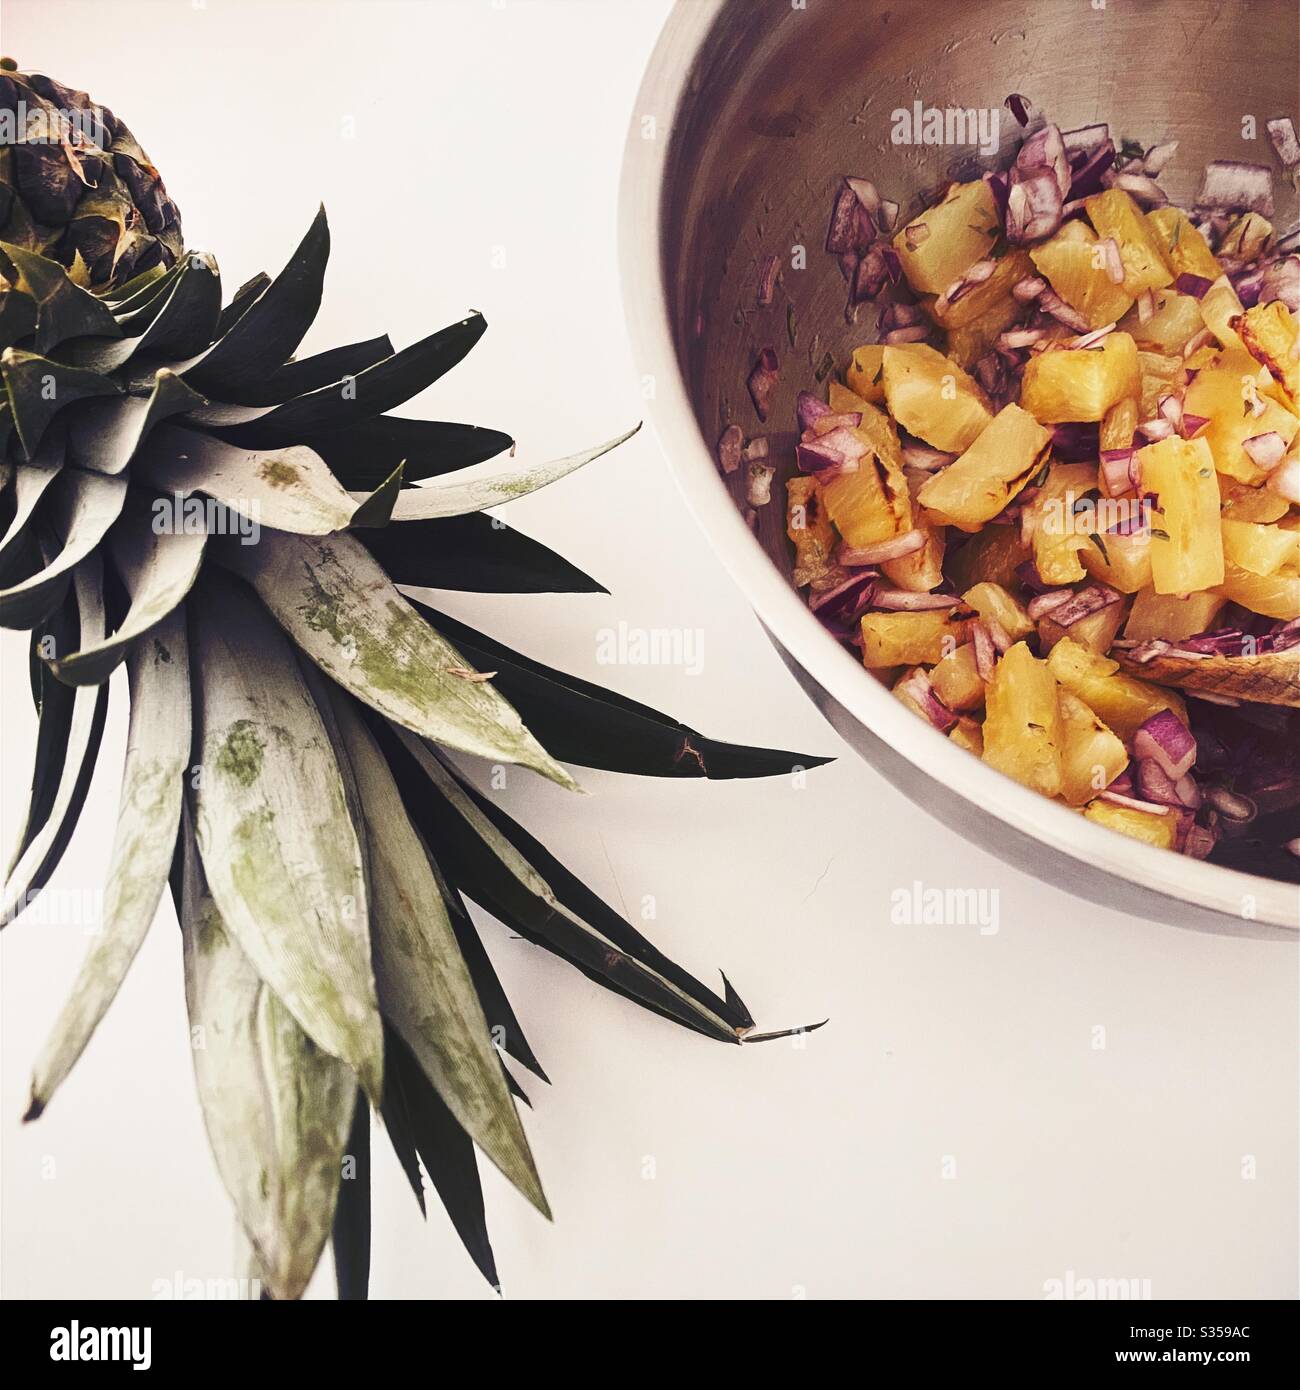 Preparazione di un piatto di ananas in cucina. Preparazione di frutta fresca e matura. Ingredienti per la salsa di ananas fatta in casa. Pezzi alla griglia con cipolla rossa, succo di lime e coriandolo in una terrina di acciaio. Foto Stock